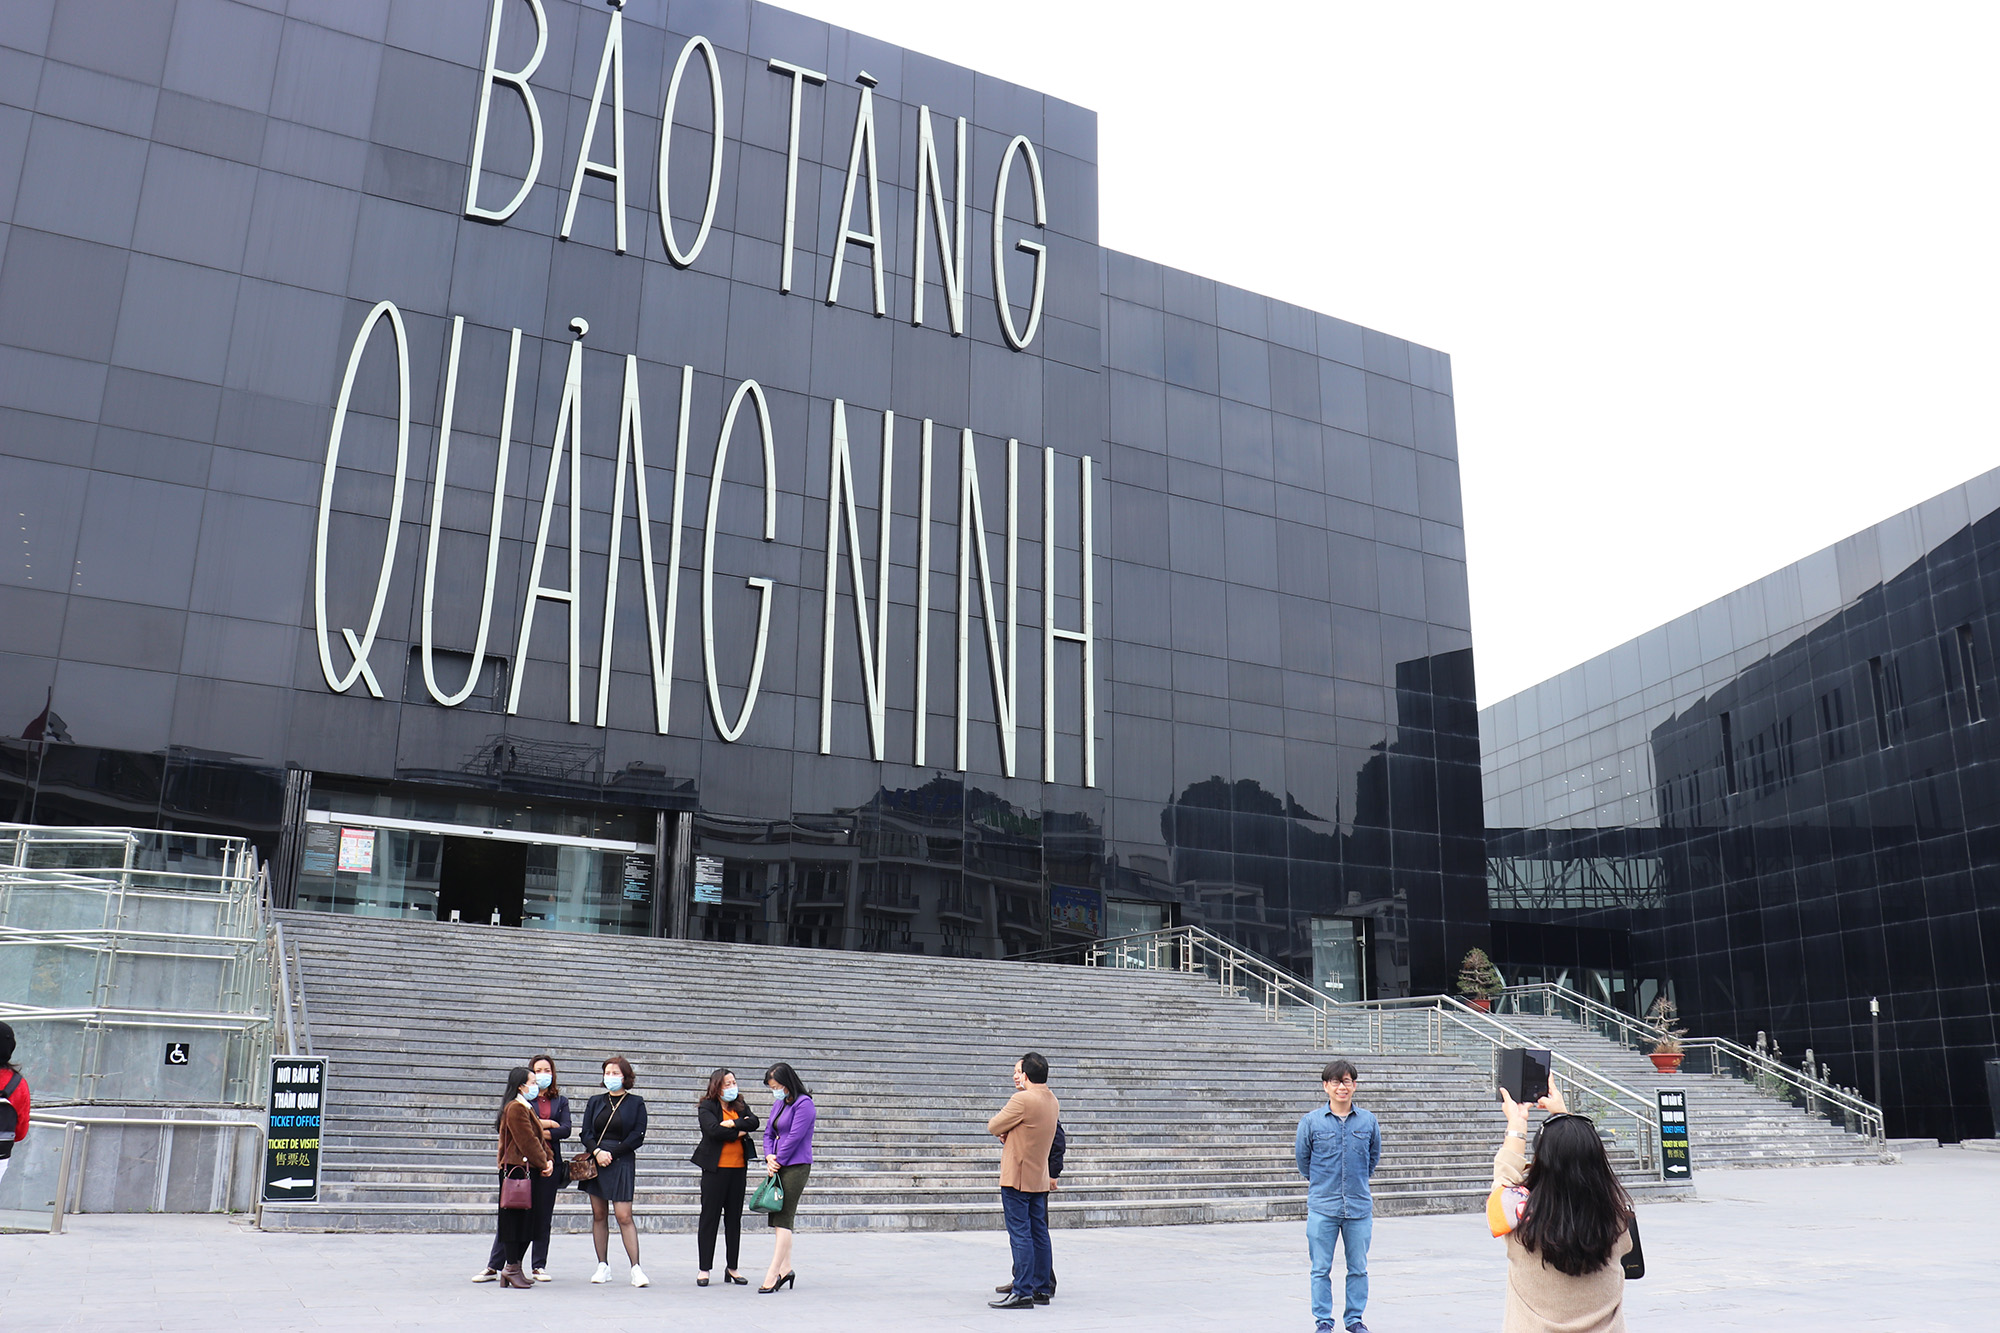 Địa điểm đầu tiên đoàn đại biểu thăm quan là Bảo tàng Quảng Ninh.